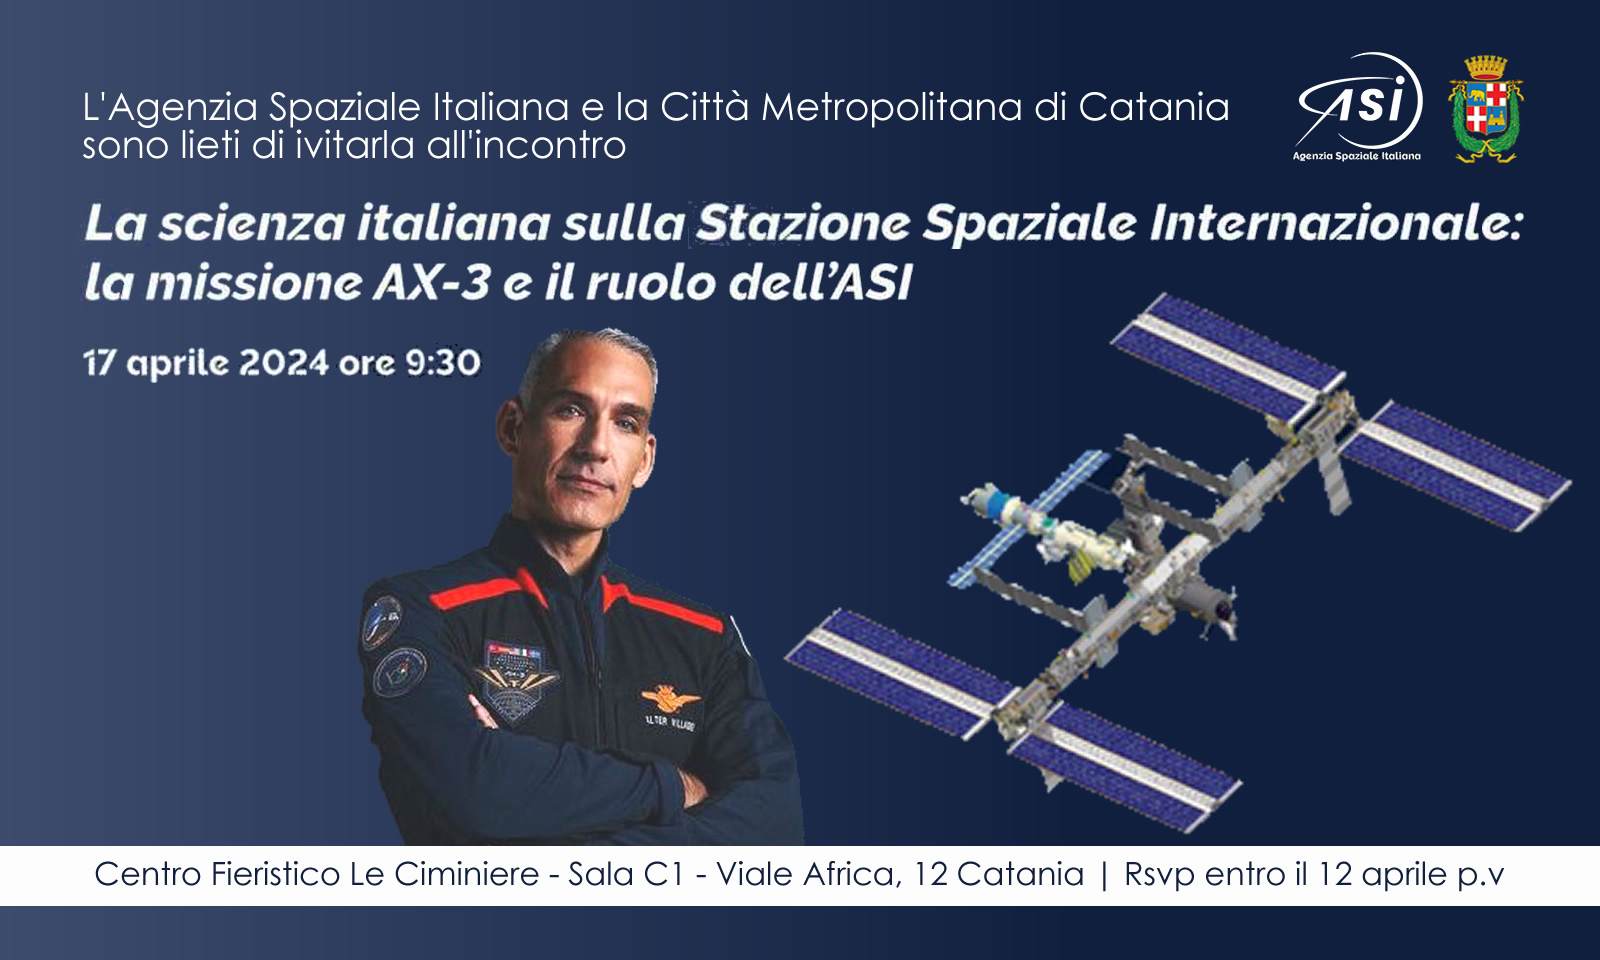 Mercoledì 17 incontro con l'Agenzia Spaziale Italiana e l'astronauta Walter Villadei per parlare di scienza italiana sulla Stazione Spaziale Internazionale: la missione Ax-3